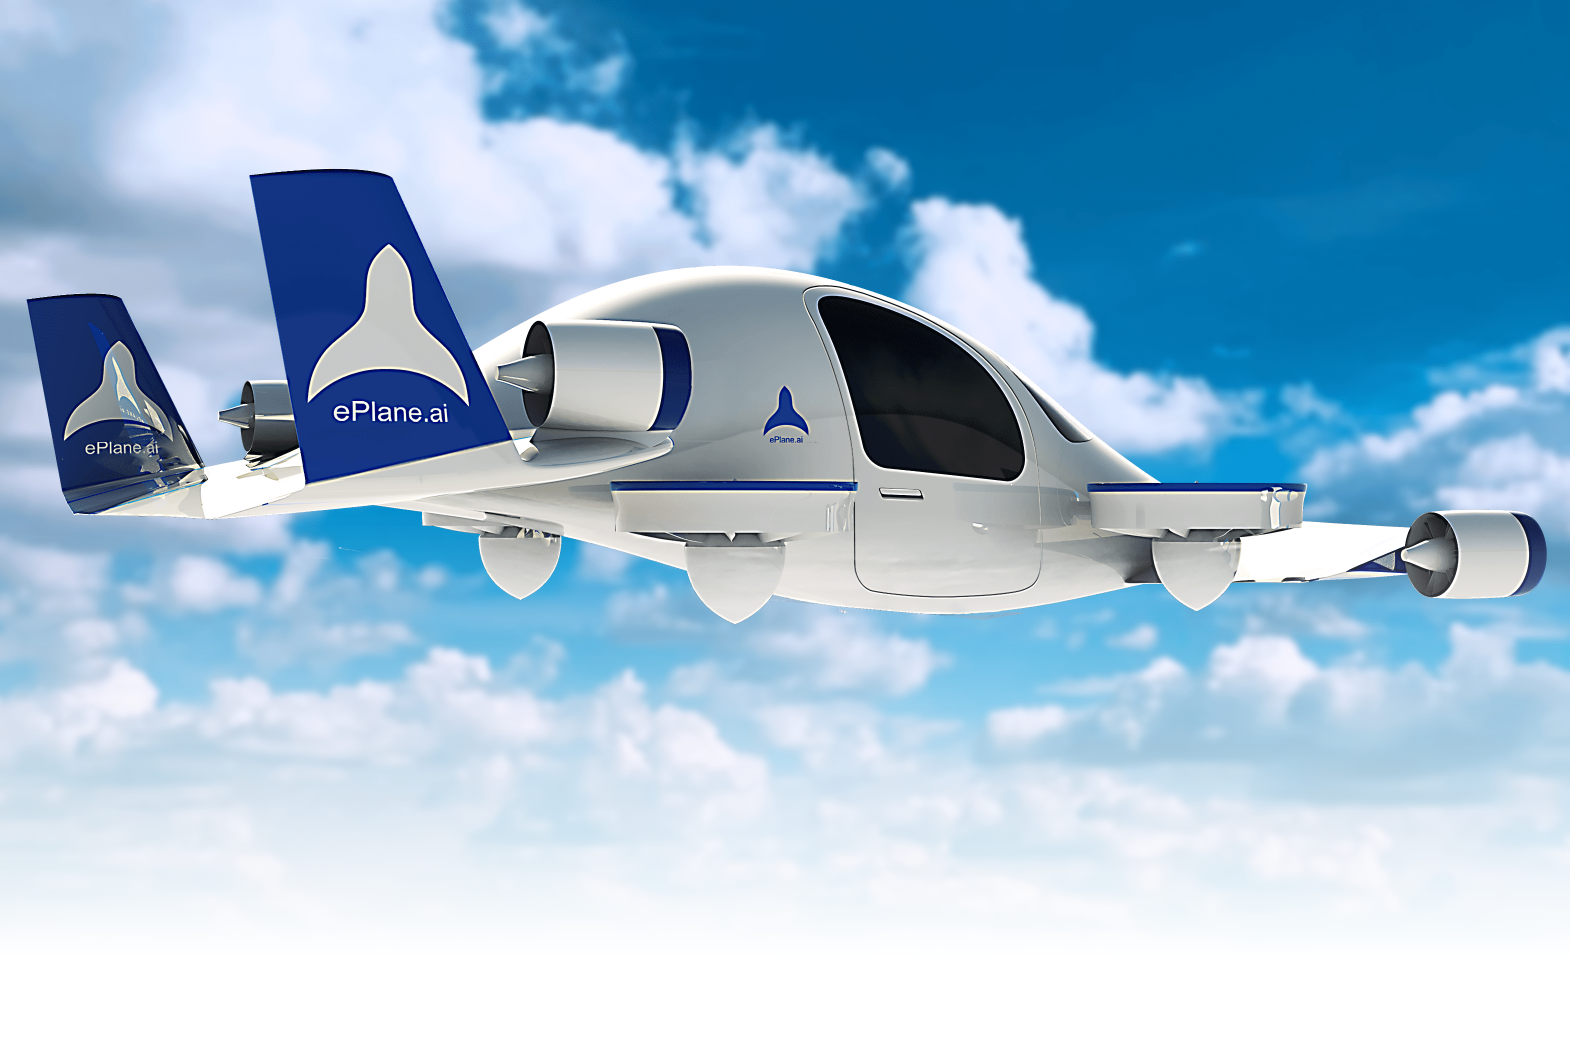 Le fondateur d'ePlane a déclaré que l'entreprise prévoyait de sortir le premier prototype du taxi aérien d'ici la fin de 2024, et de lancer la commercialisation à grande échelle en Inde en 2027